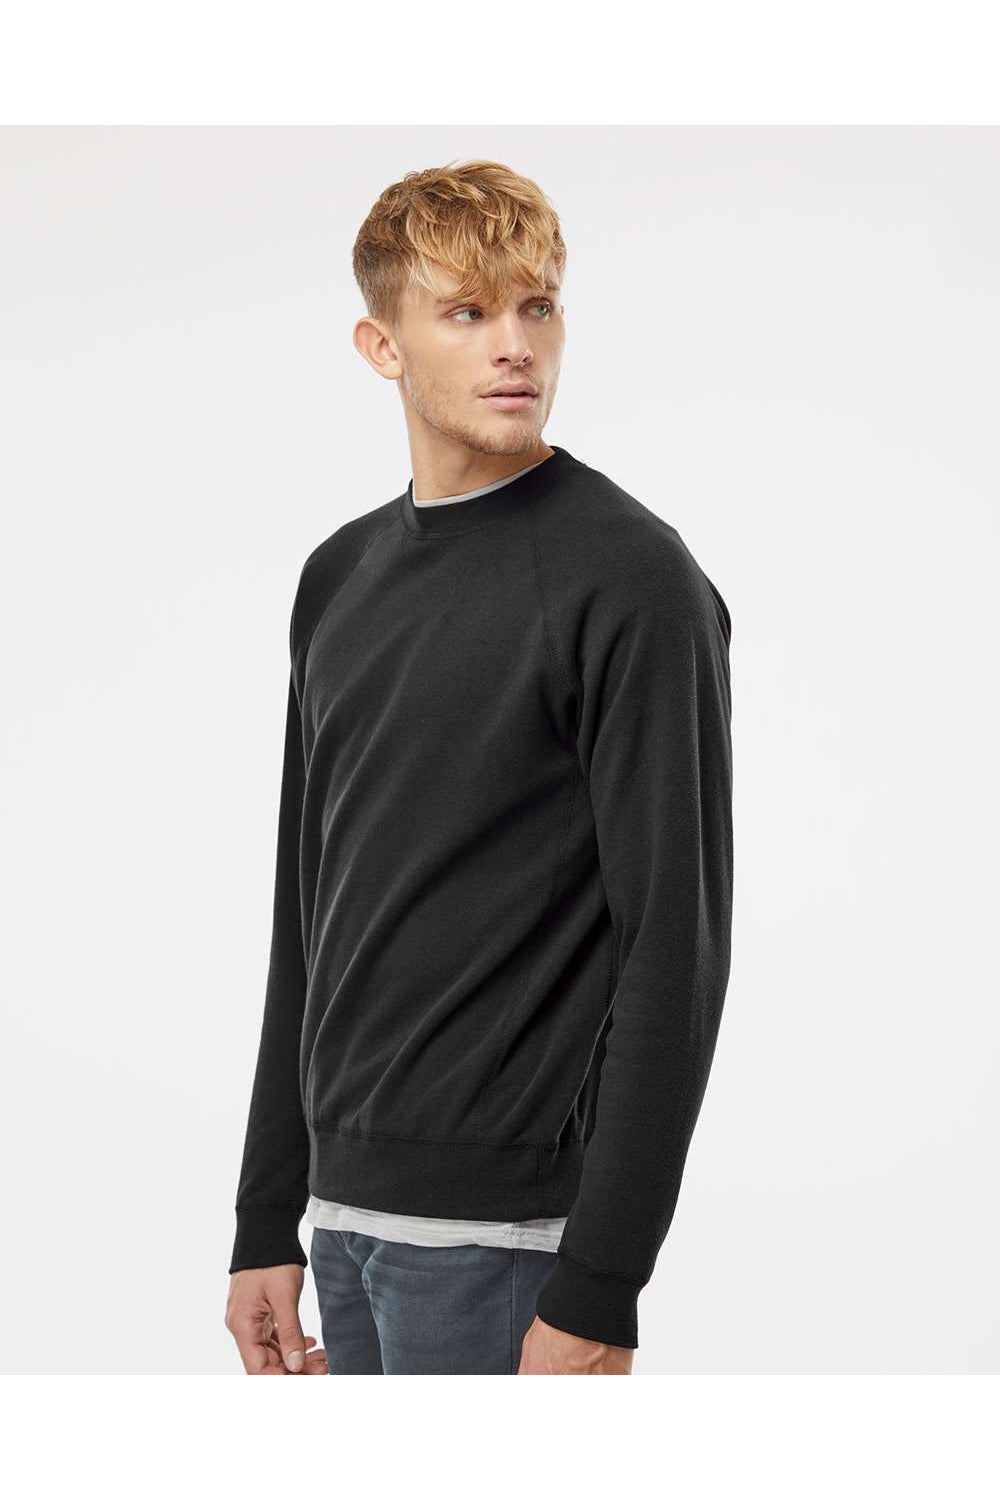 Independent Trading Co. PRM30SBC Mens Special Blend Crewneck Raglan Sweatshirt Black Model Side